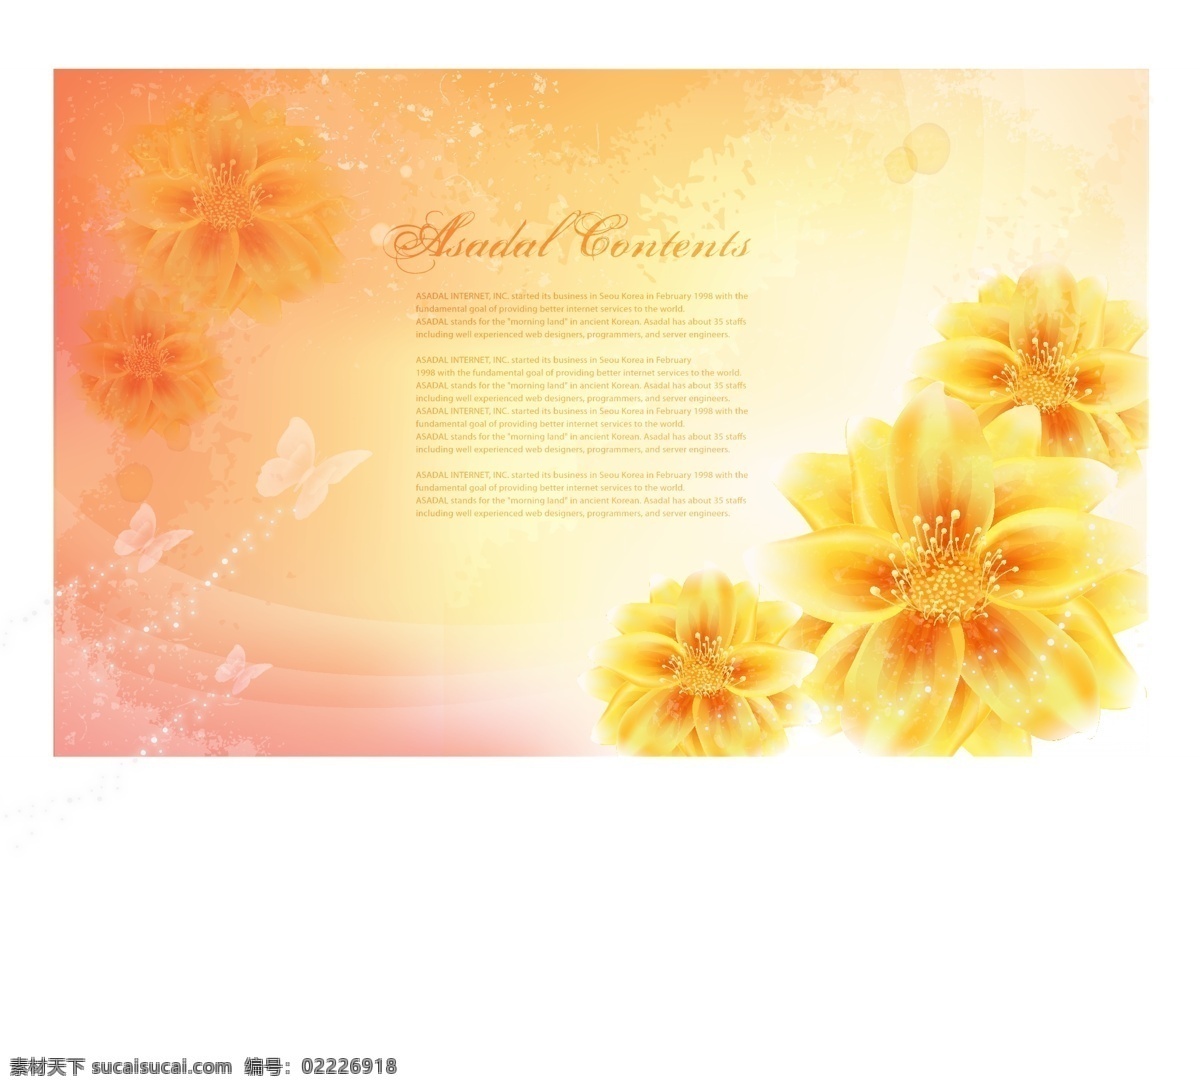 手绘 金色 花朵 梦幻 背景 韩国 蝴蝶 花卉 模板 墨迹 设计稿 素材元素 源文件 矢量图